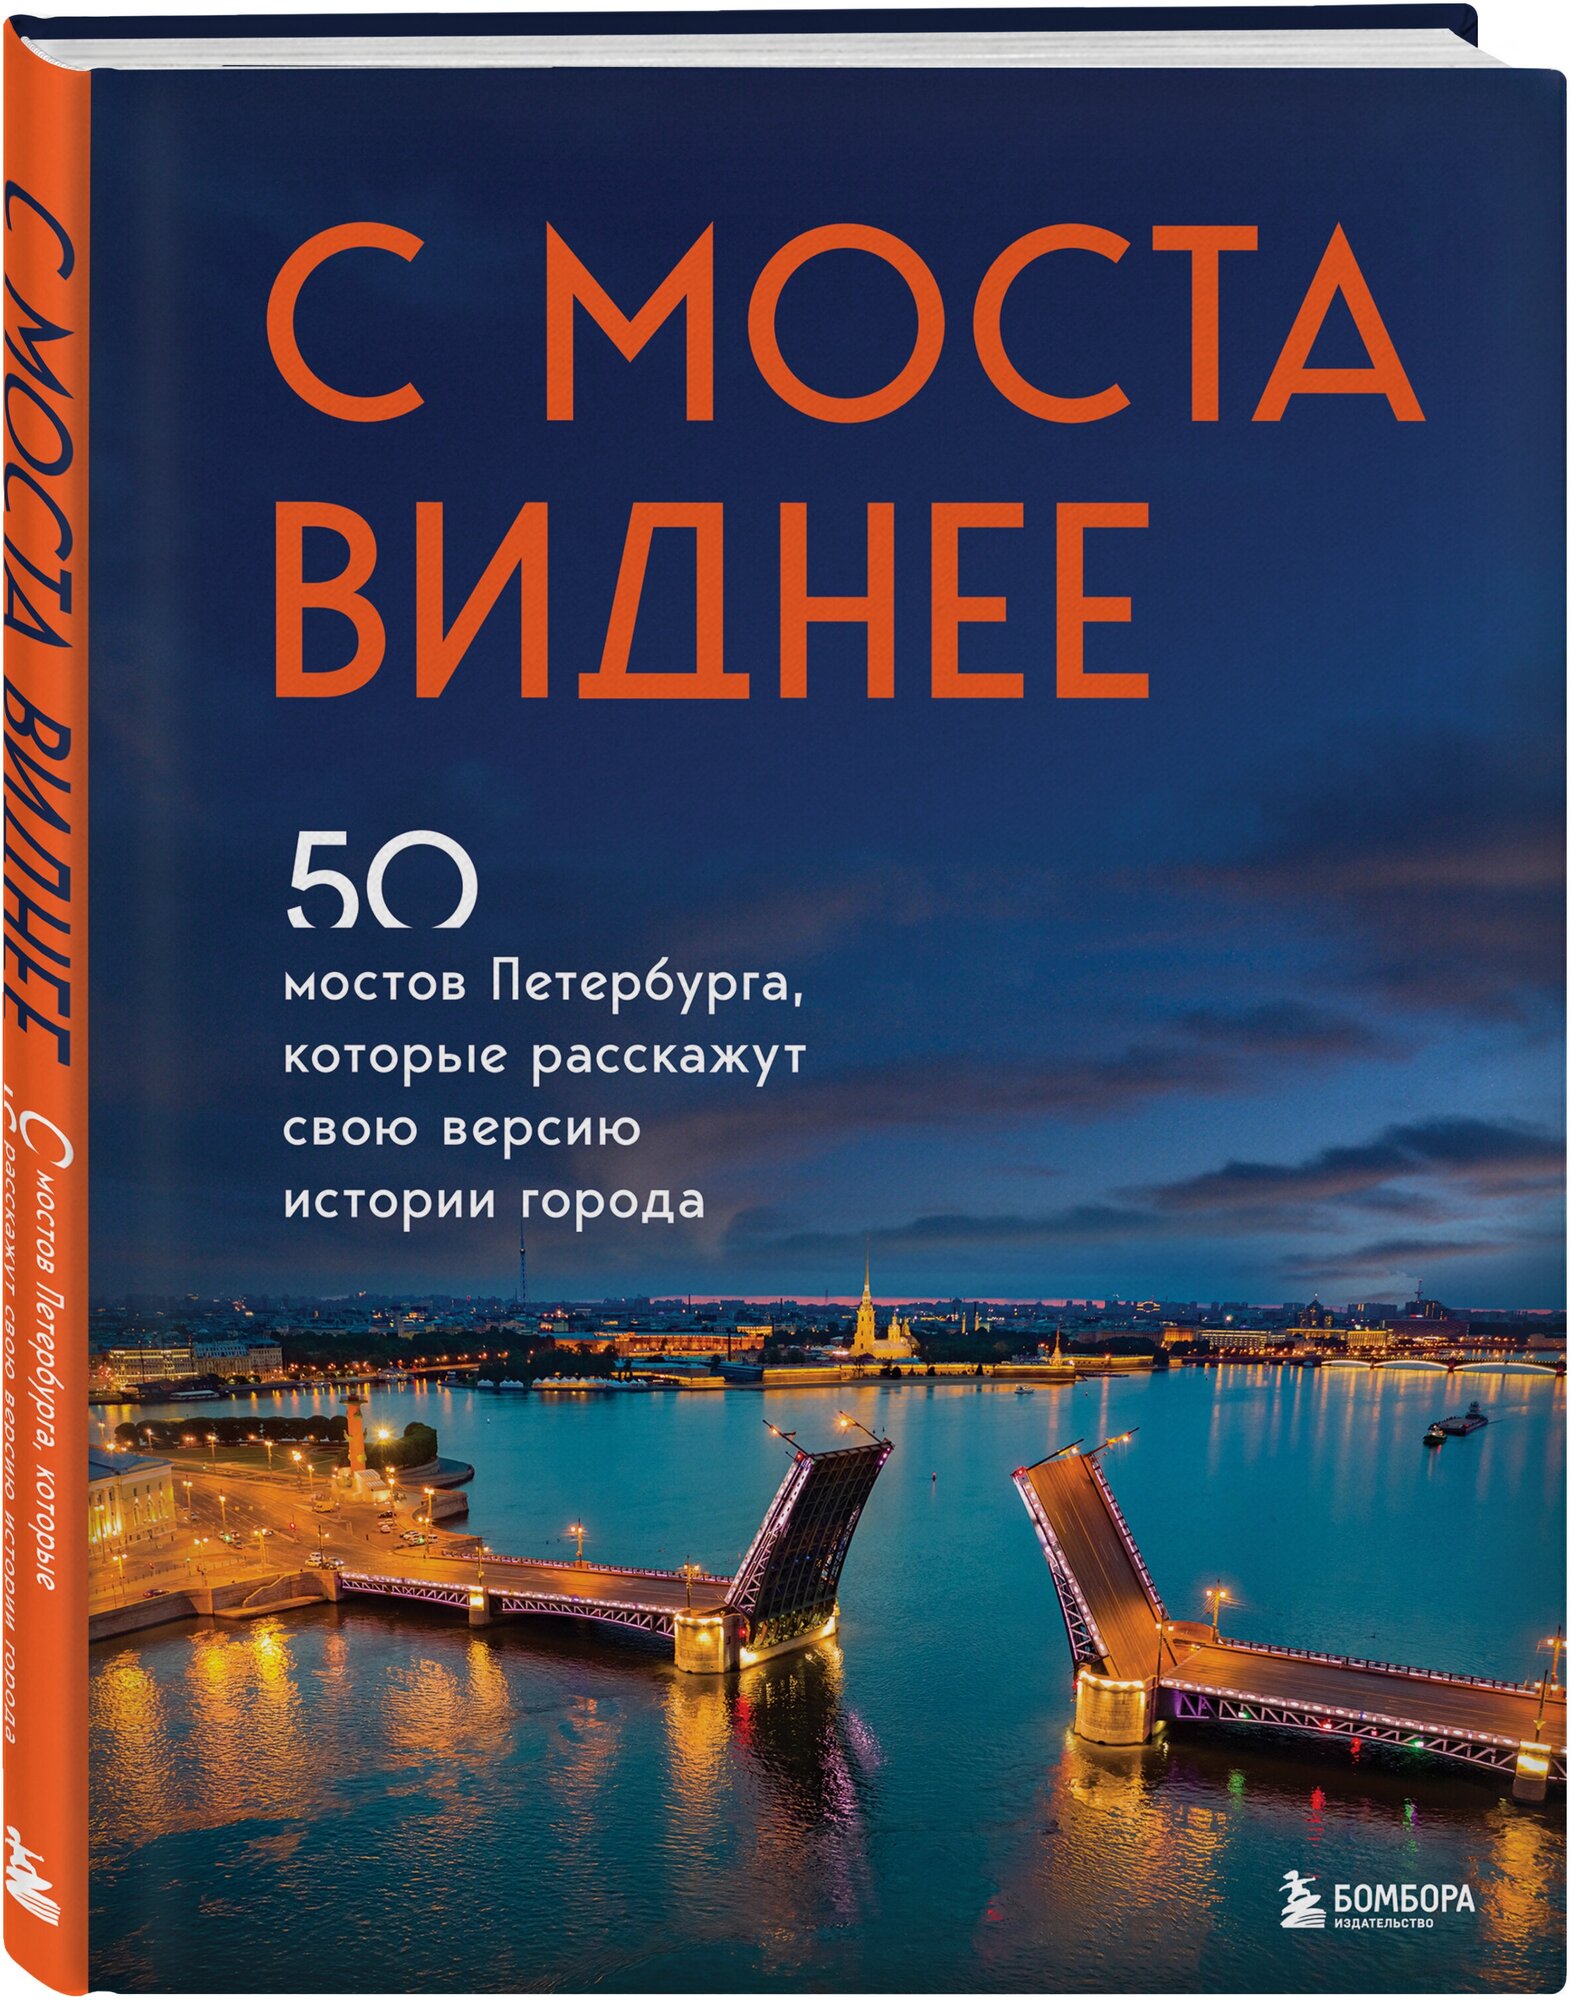 С моста виднее. 50 мостов Петербурга, которые расскажут свою версию истории города - фото №4